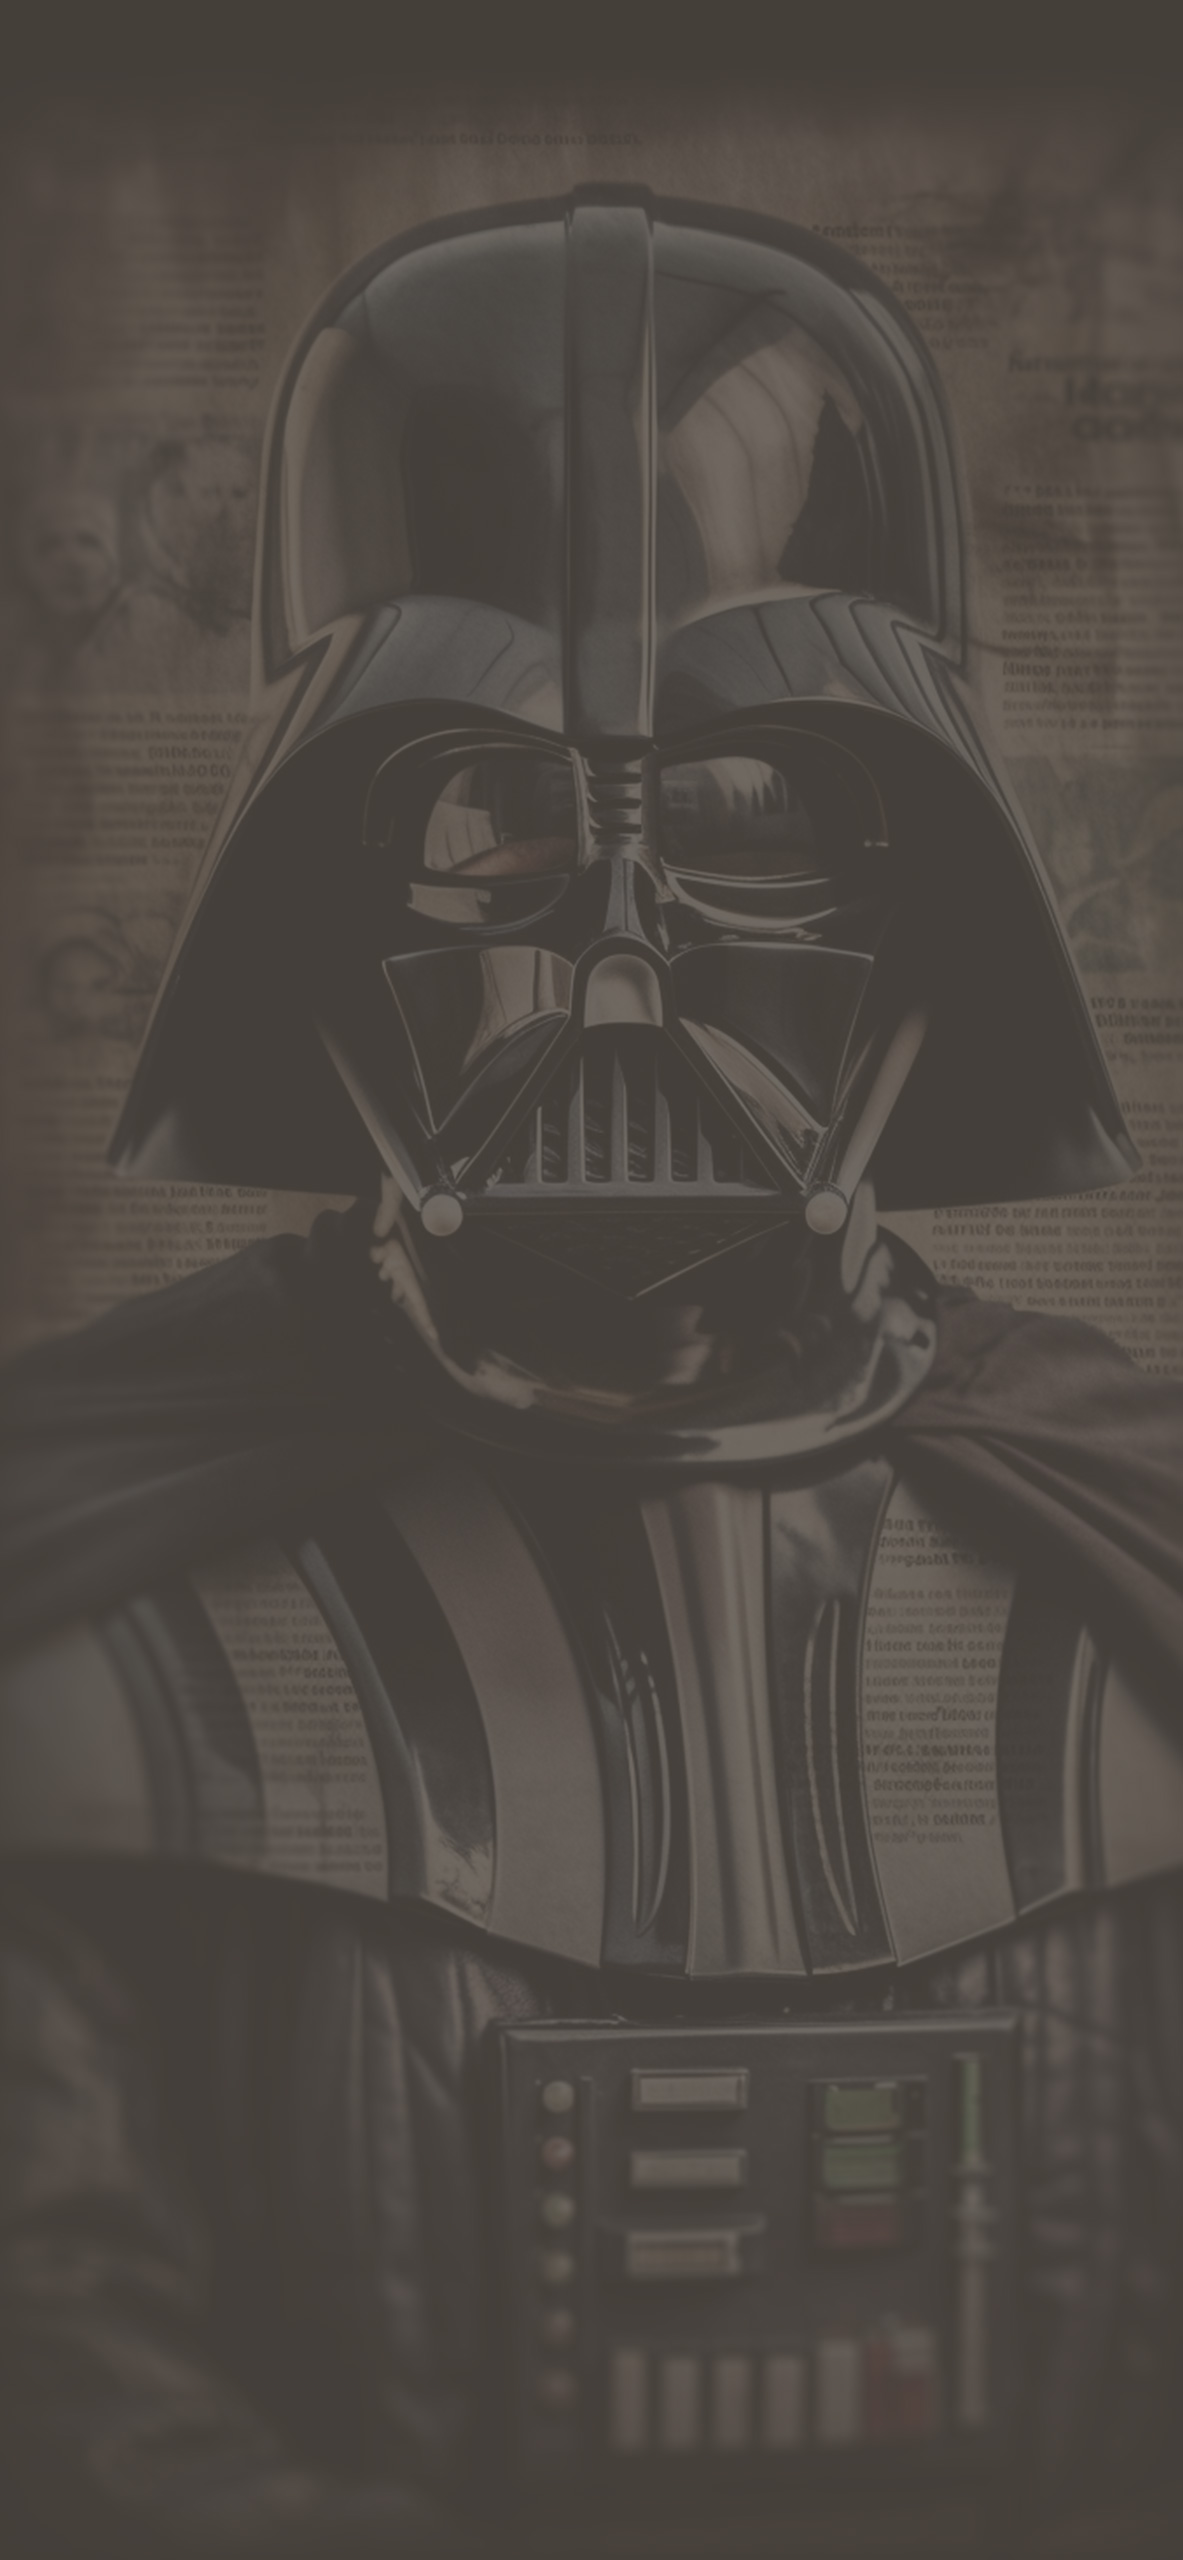 Darth Vader & Newspaper Wallpaper Darth Vader Wallpaper for iP